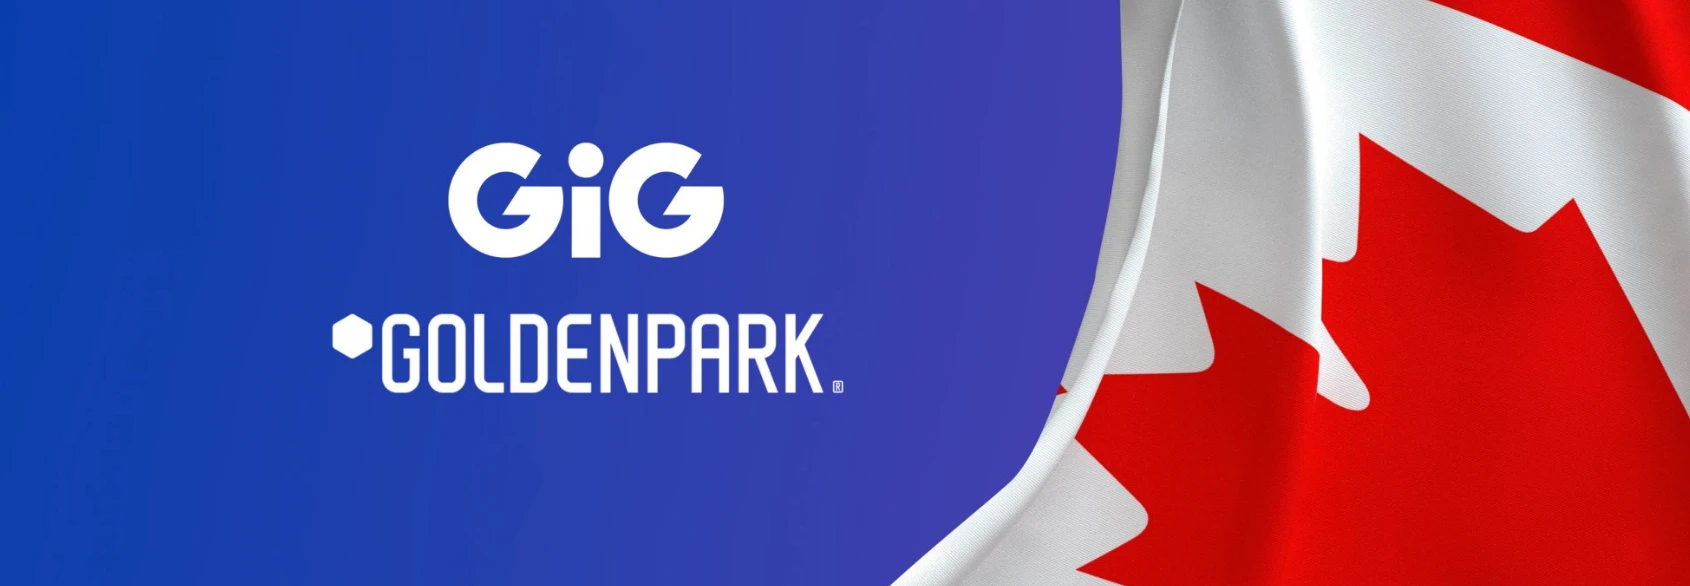 GiG-Goldenpark_header image